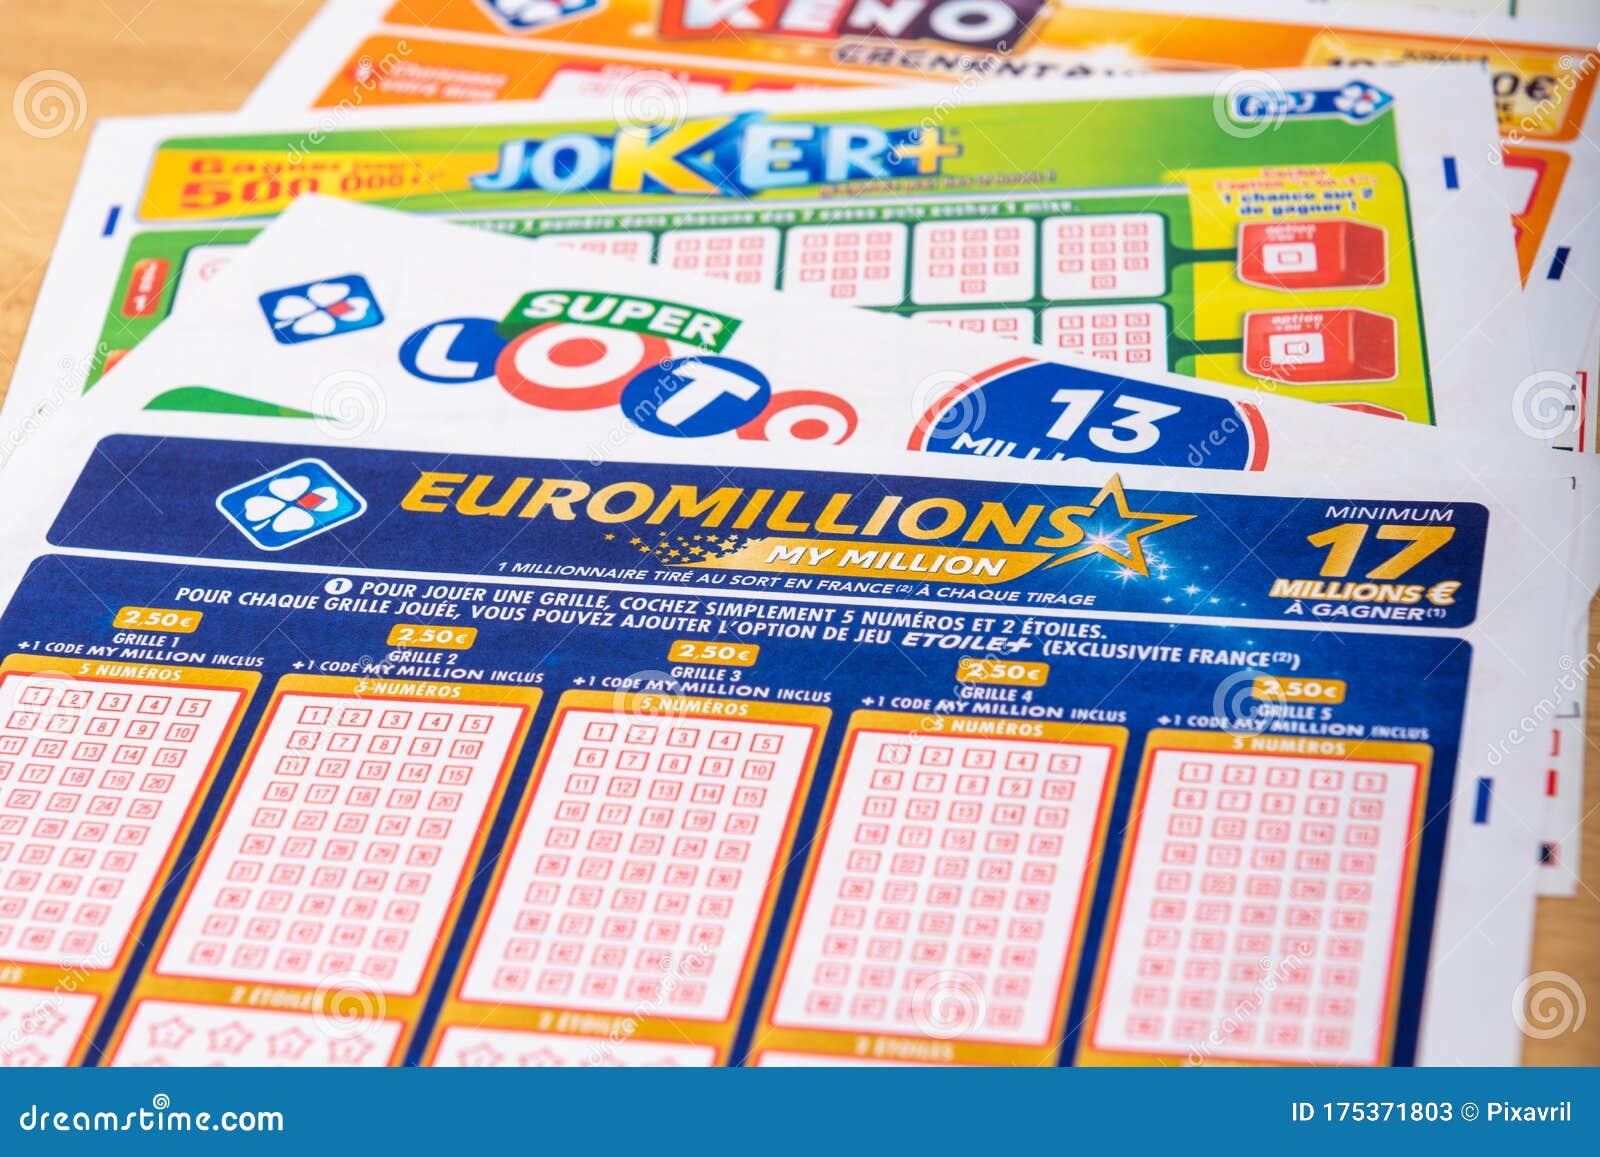 Euromillion lotto